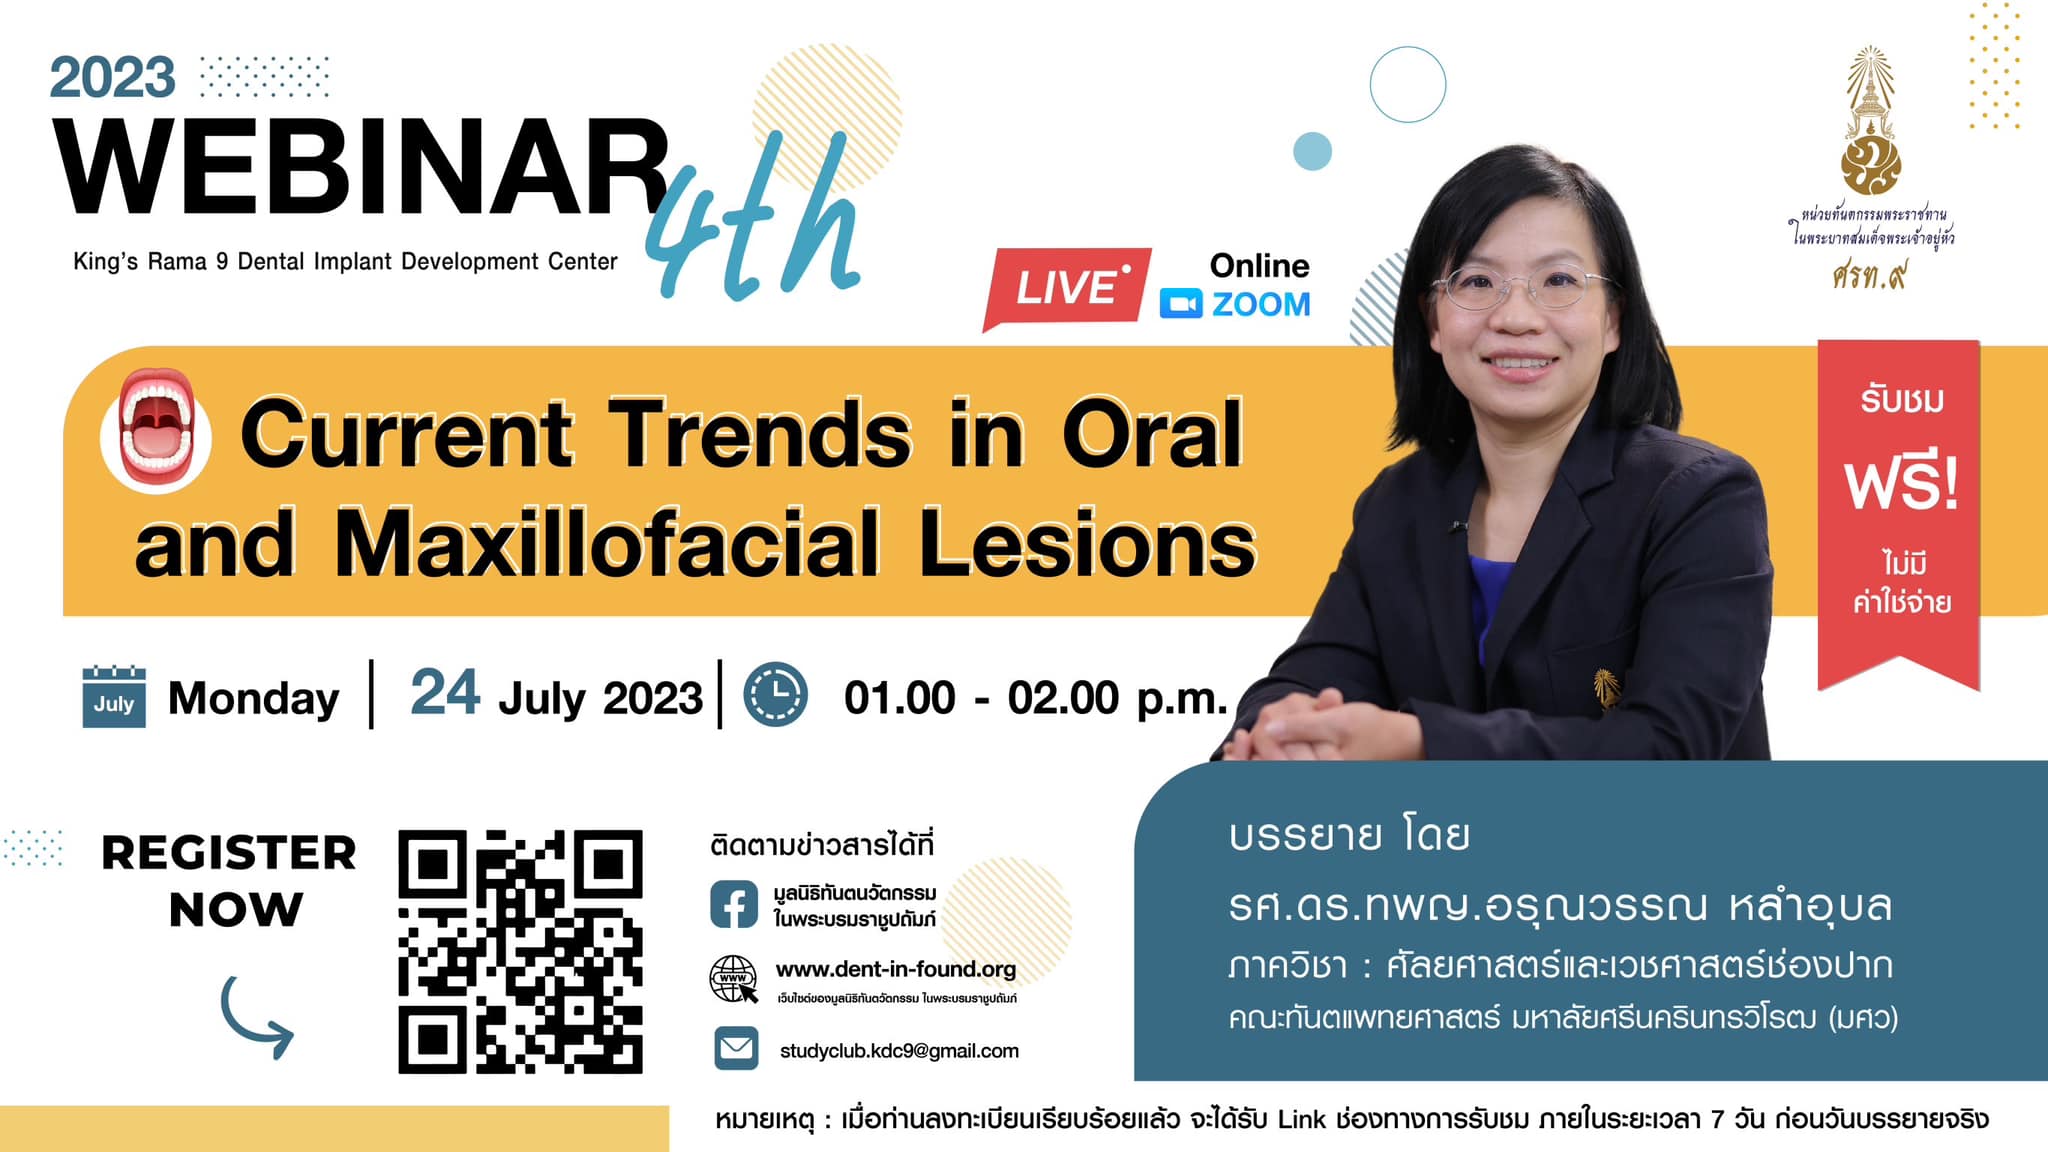 กิจกรรม Webinar ครั้งที่ 4 ประจำปี 2566 หัวข้อ "Current Trends in Oral and Maxillofacial Lesions" รอยโรคในช่องปากและขากรรไกรที่พบได้ในปัจจุบัน